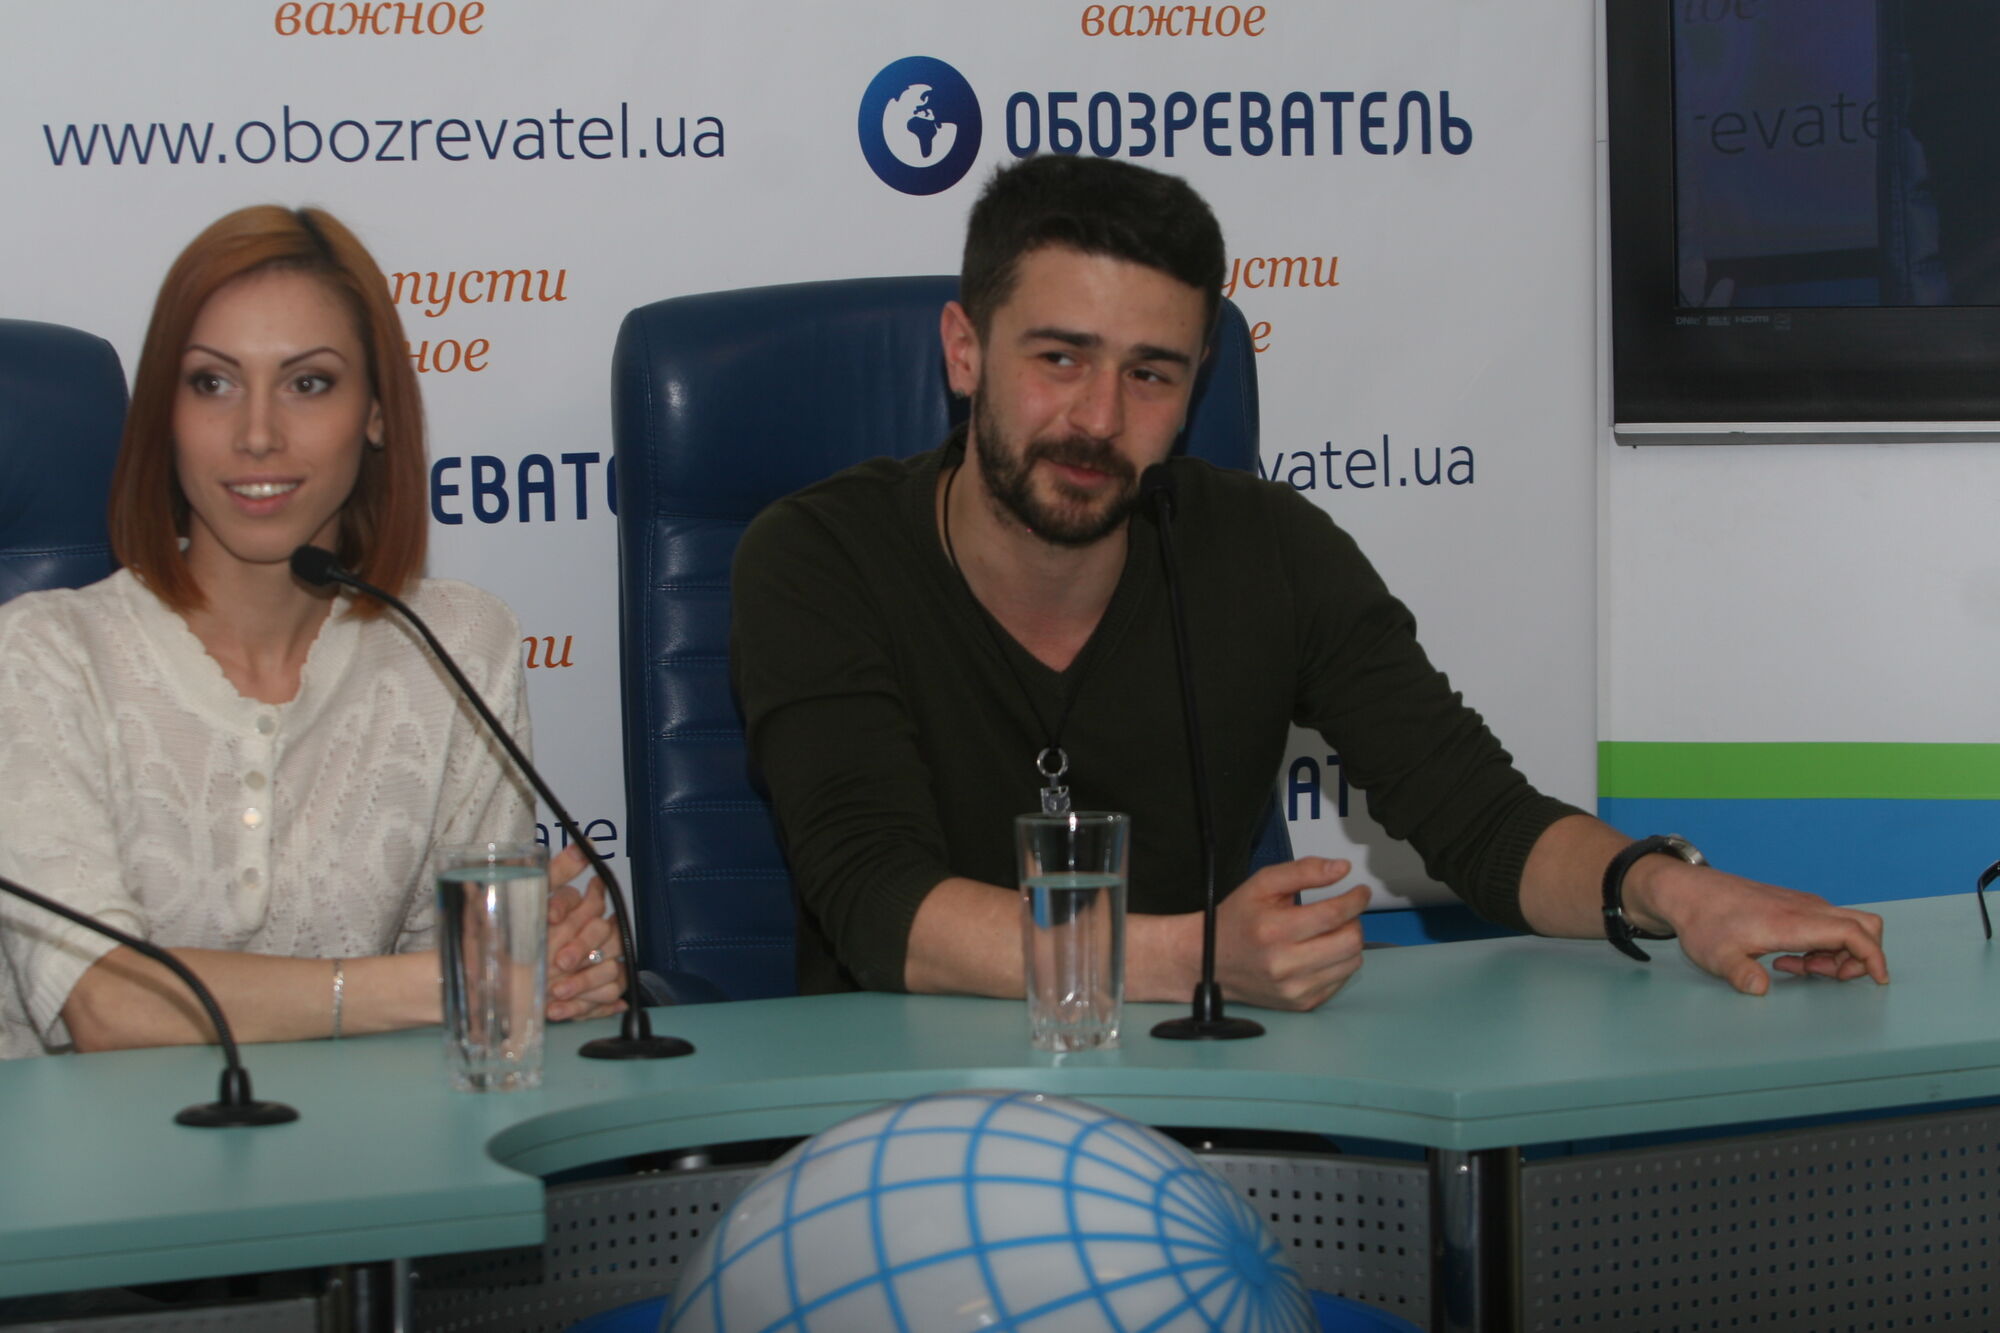 Молдова на Евровидении 2013 в гостях у Обозревателя